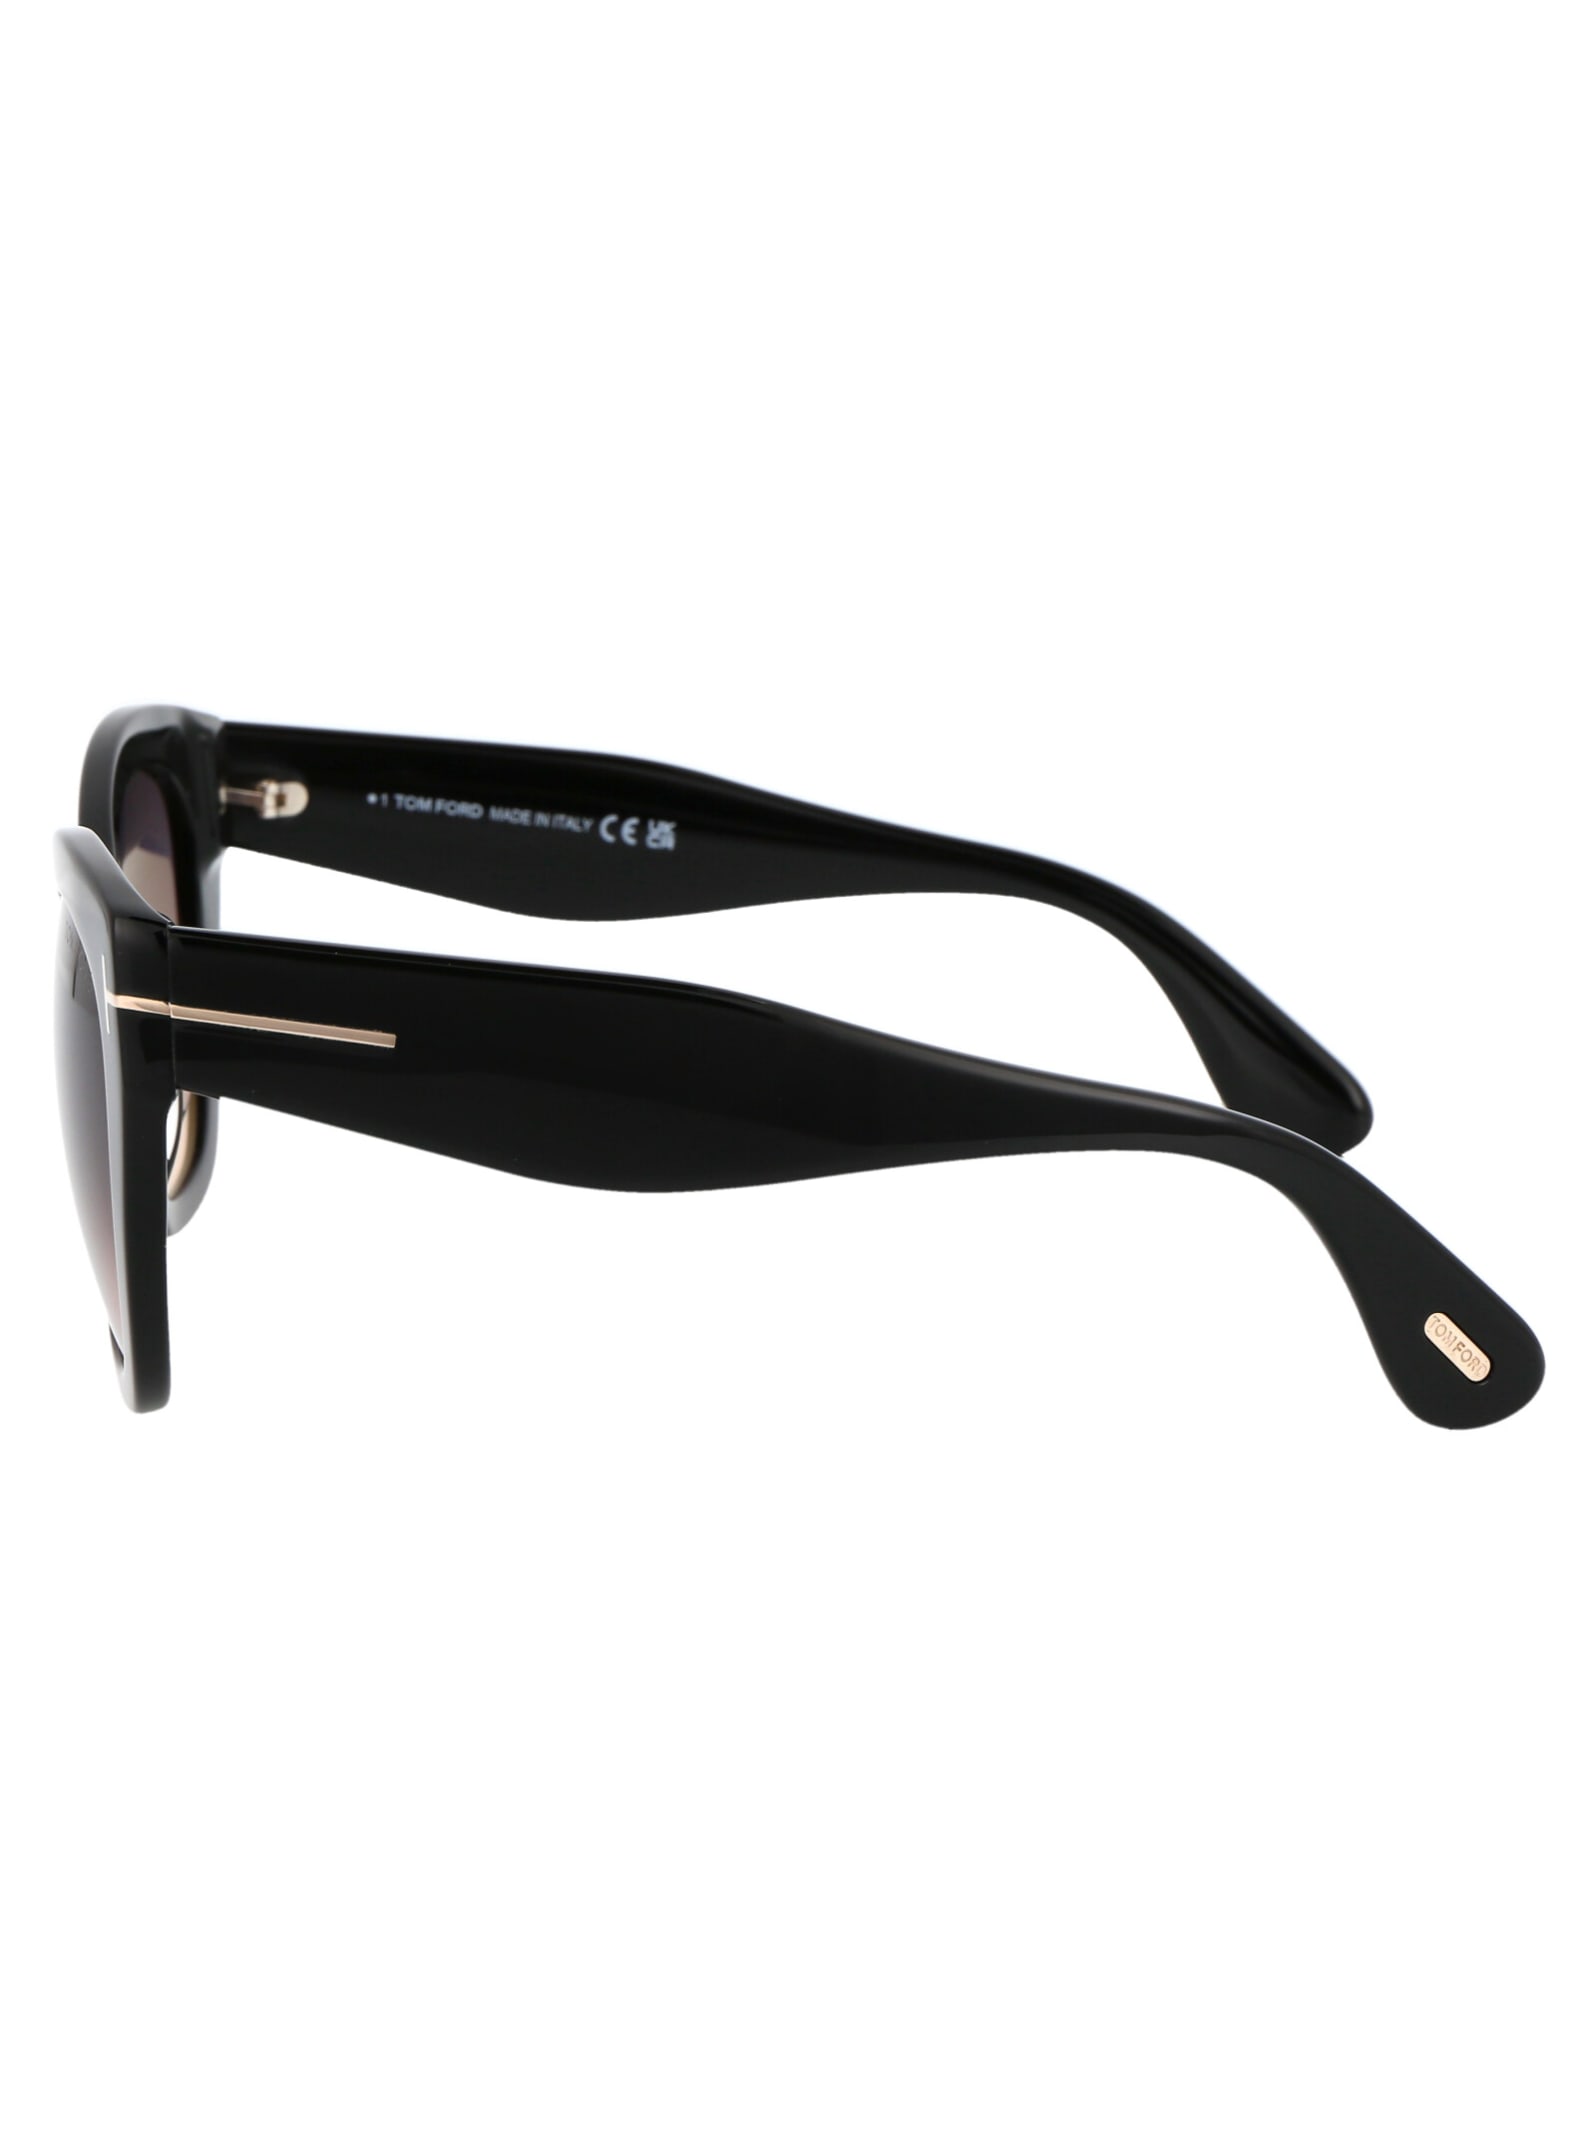 Shop Tom Ford Cara Sunglasses In 01b Nero Lucido / Fumo Grad